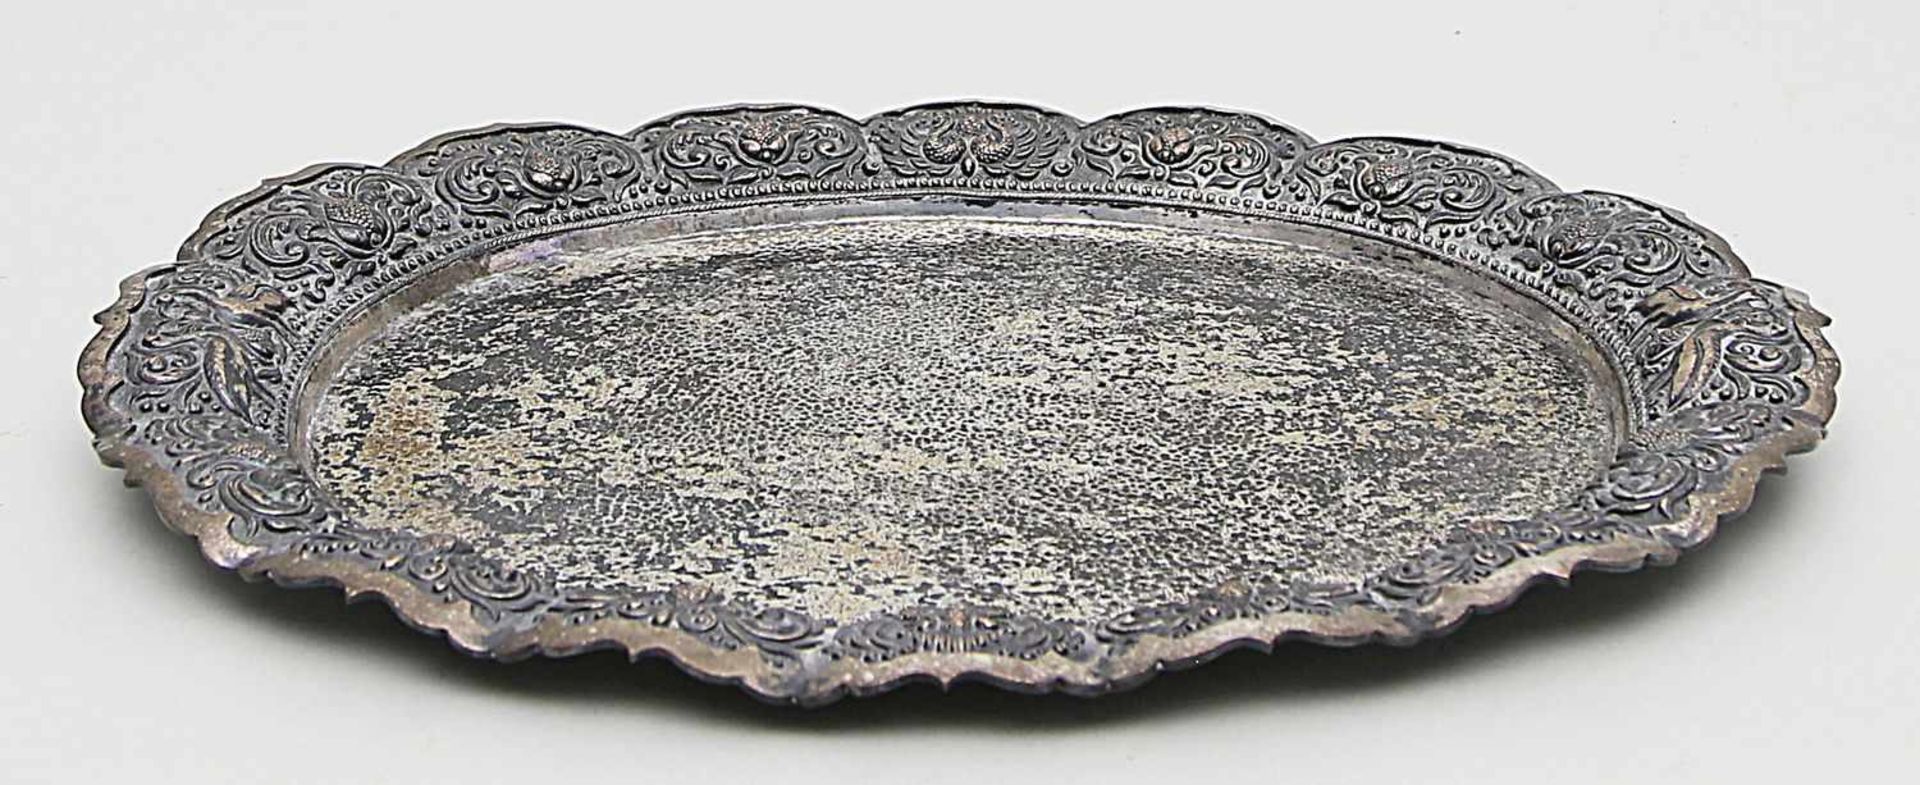 Ovales Tablett.800/000 Silber, 774 g. Boden mit Hammerschlagdekor, Mehrpassig gewellter,